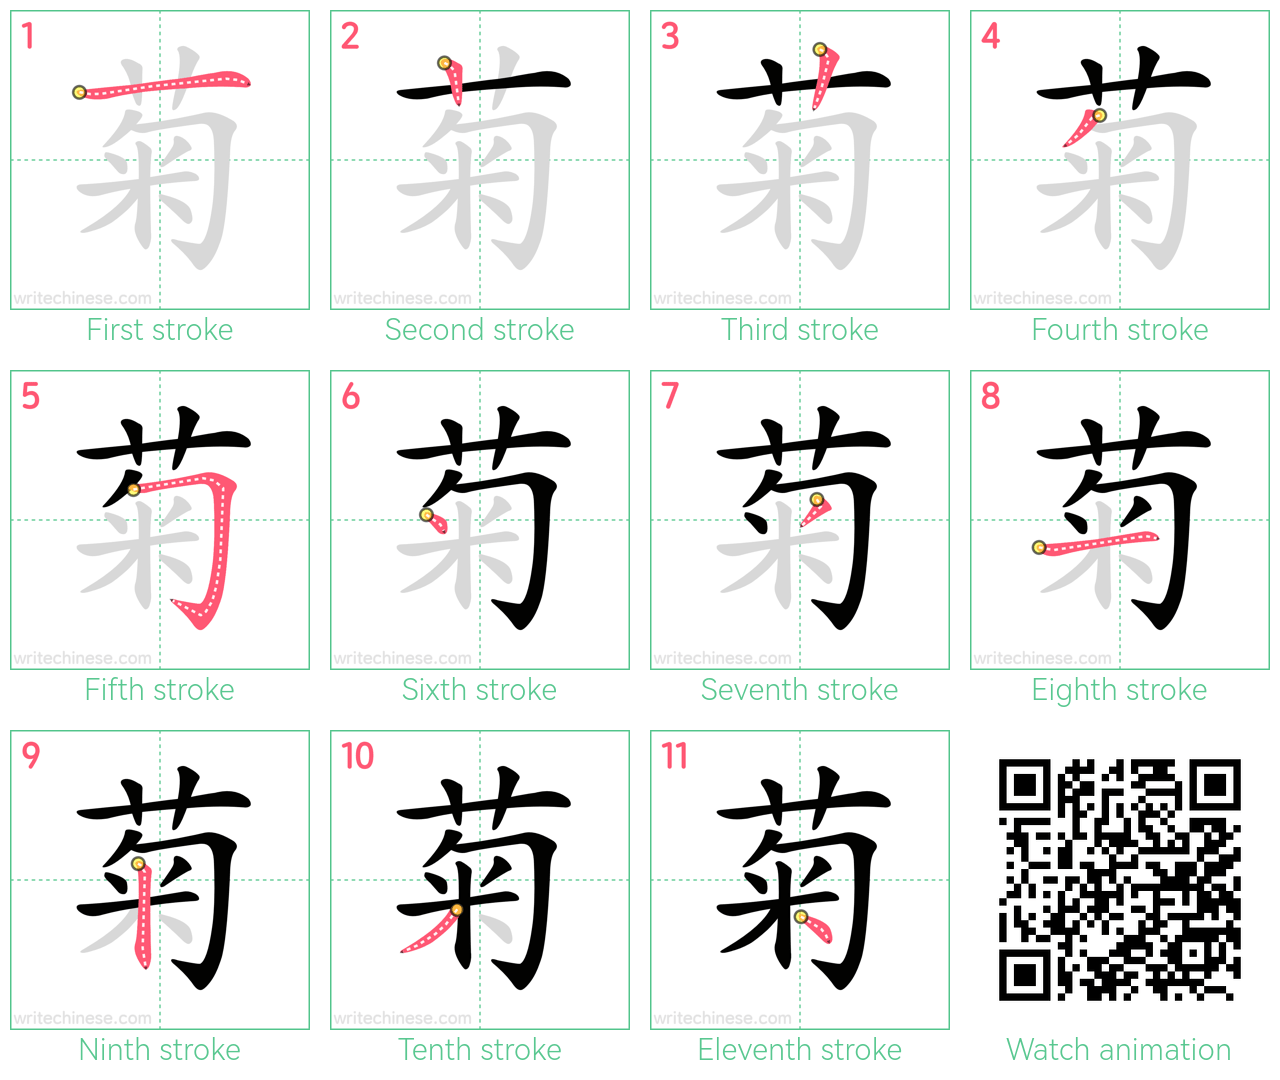 菊 step-by-step stroke order diagrams